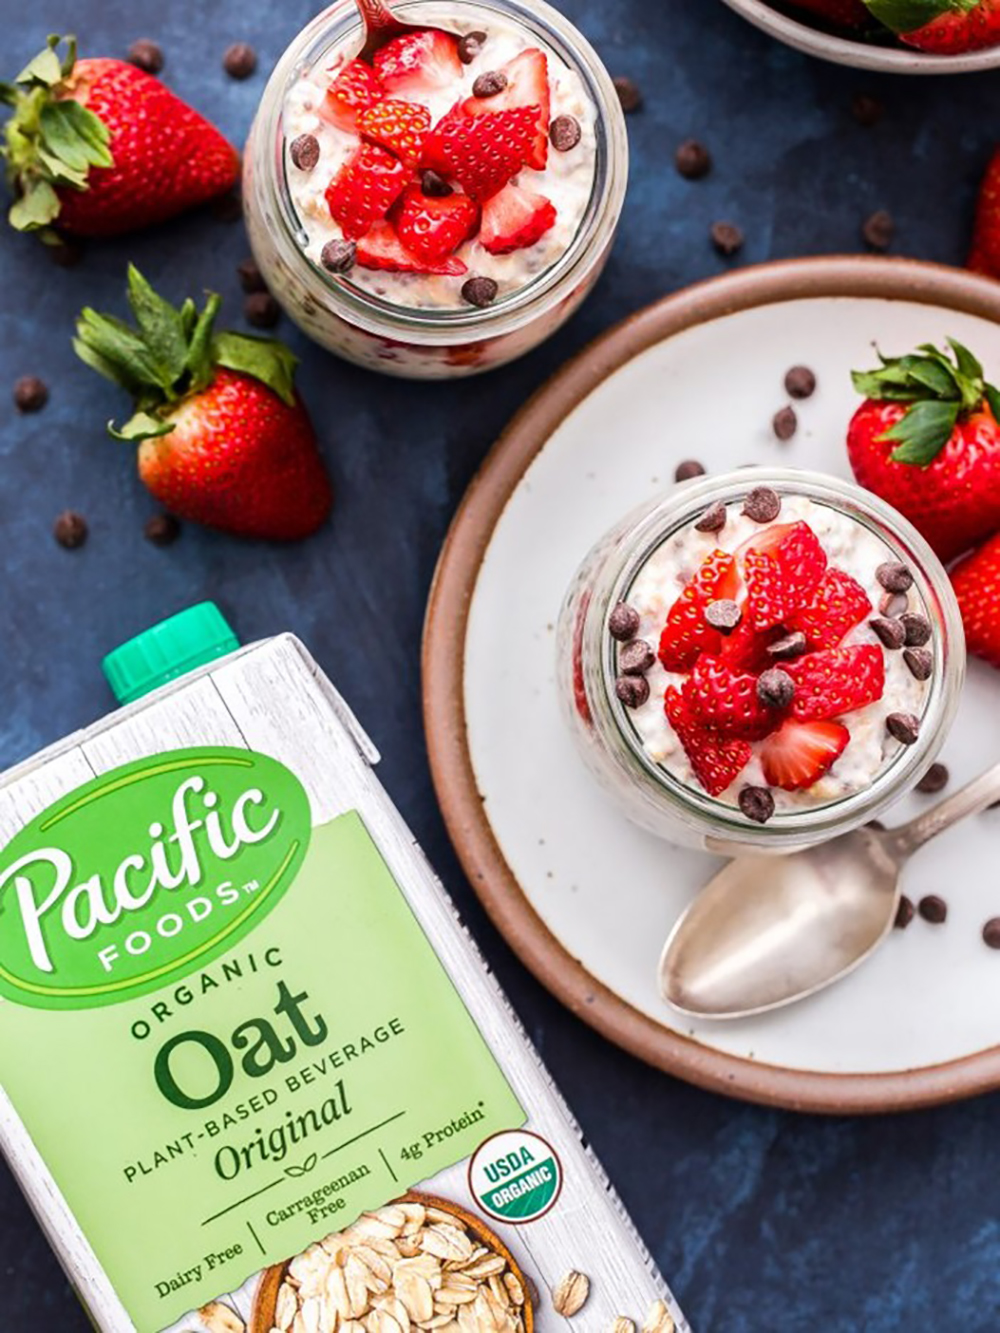 Pacific Foods Oat Milk Strawberries